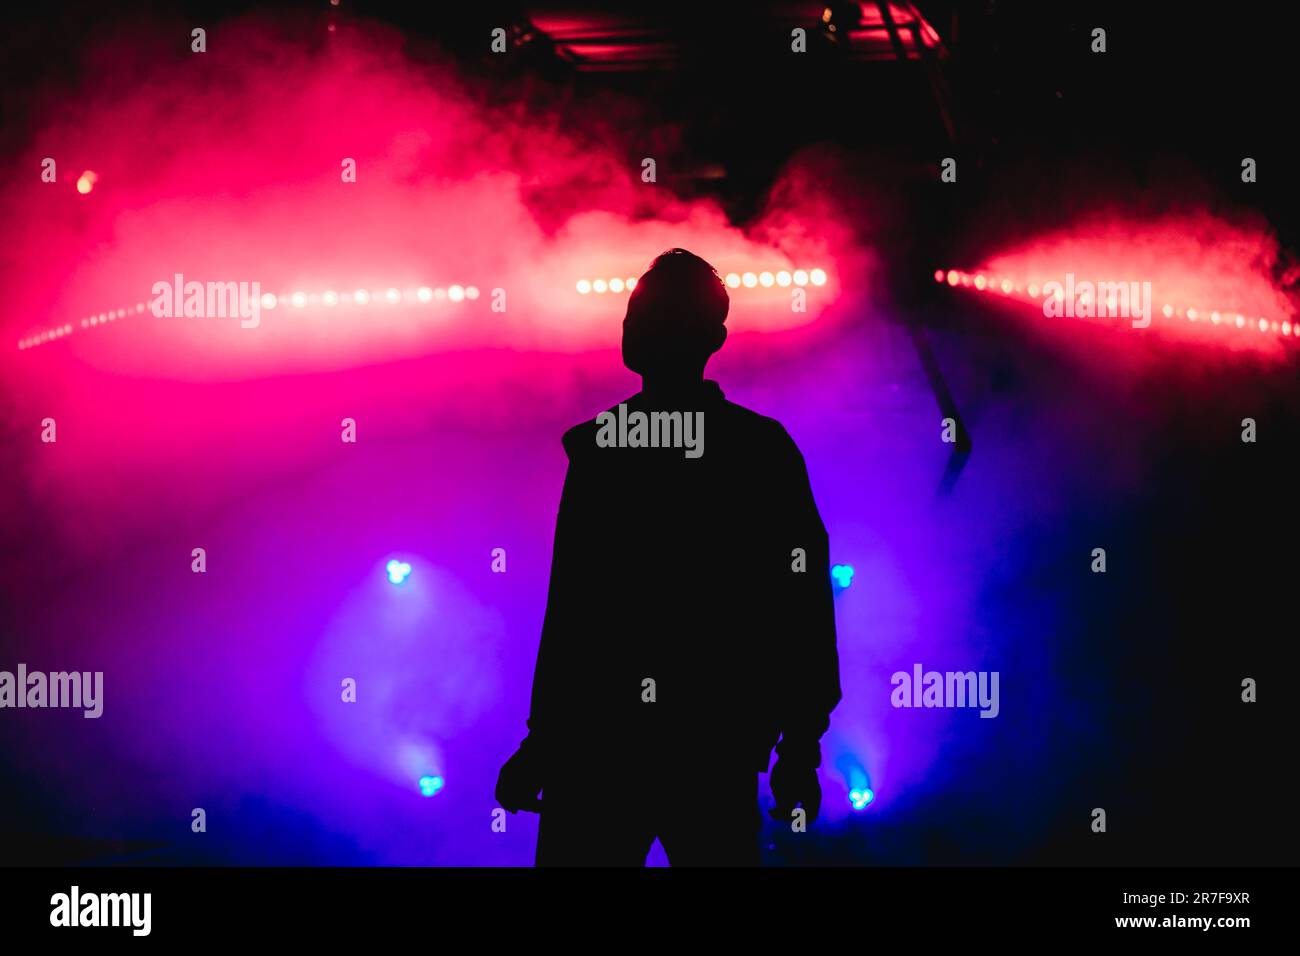 La silhouette di un uomo è circondata da un'atmosfera mitizzante di luci colorate e fumo, creando un aspetto etereo Foto Stock